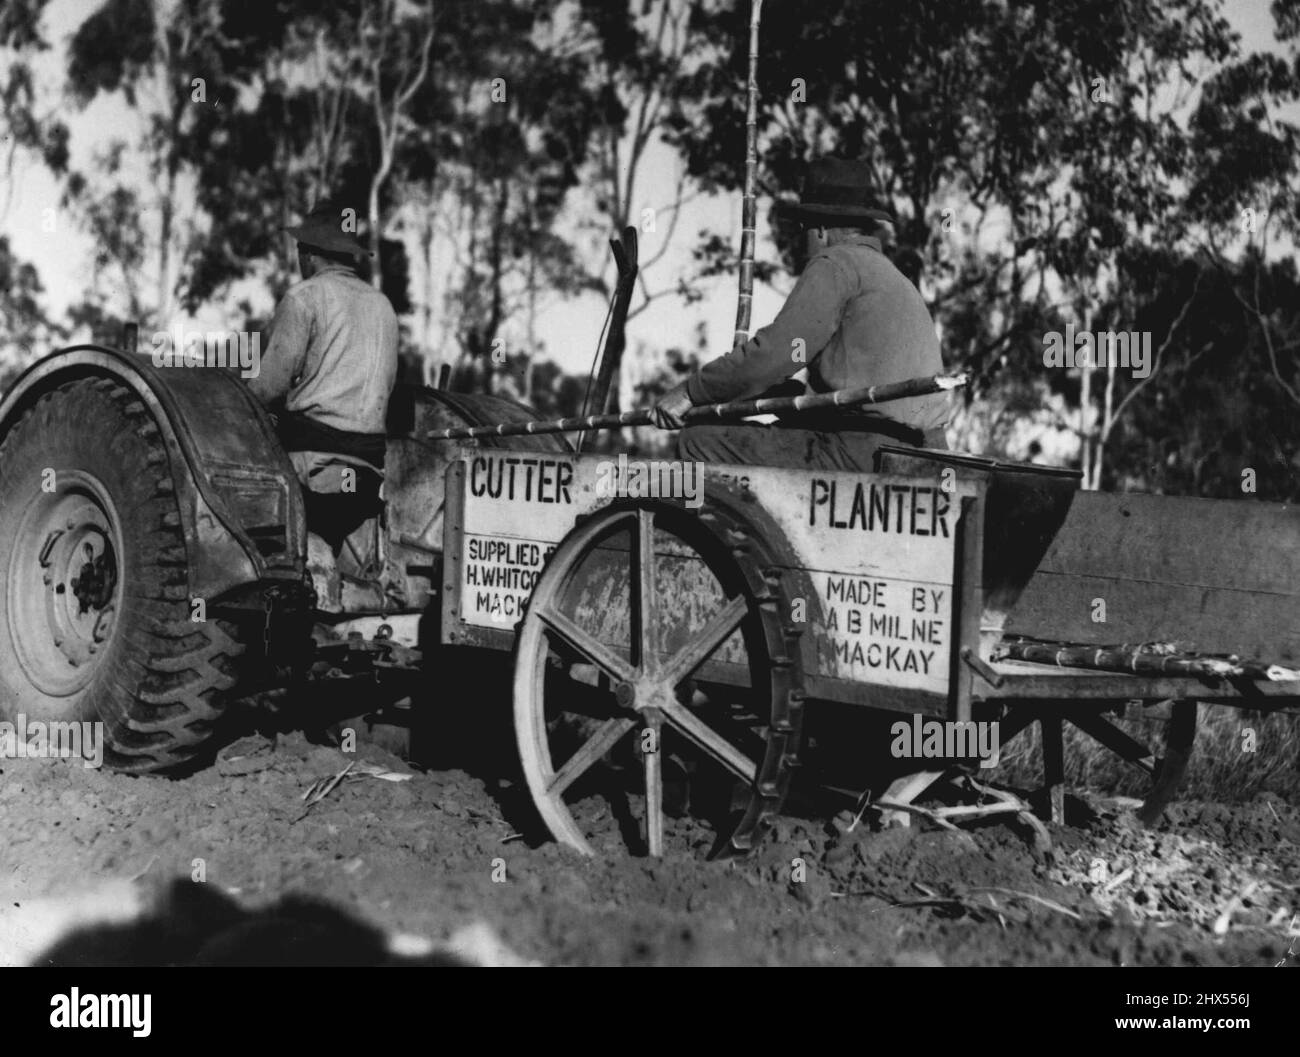 Pflanzmaschine -- Les fährt Traktor, der Pflanzmaschinen schleppt. Dieses Gerät öffnet eine Mulde von "Rill" im Boden, schneidet das Rohr auf die richtige Länge, pflanzt es in "Rill", so dass vier Zoll zwischen jedem Stück Stock. 15. November 1941. Stockfoto